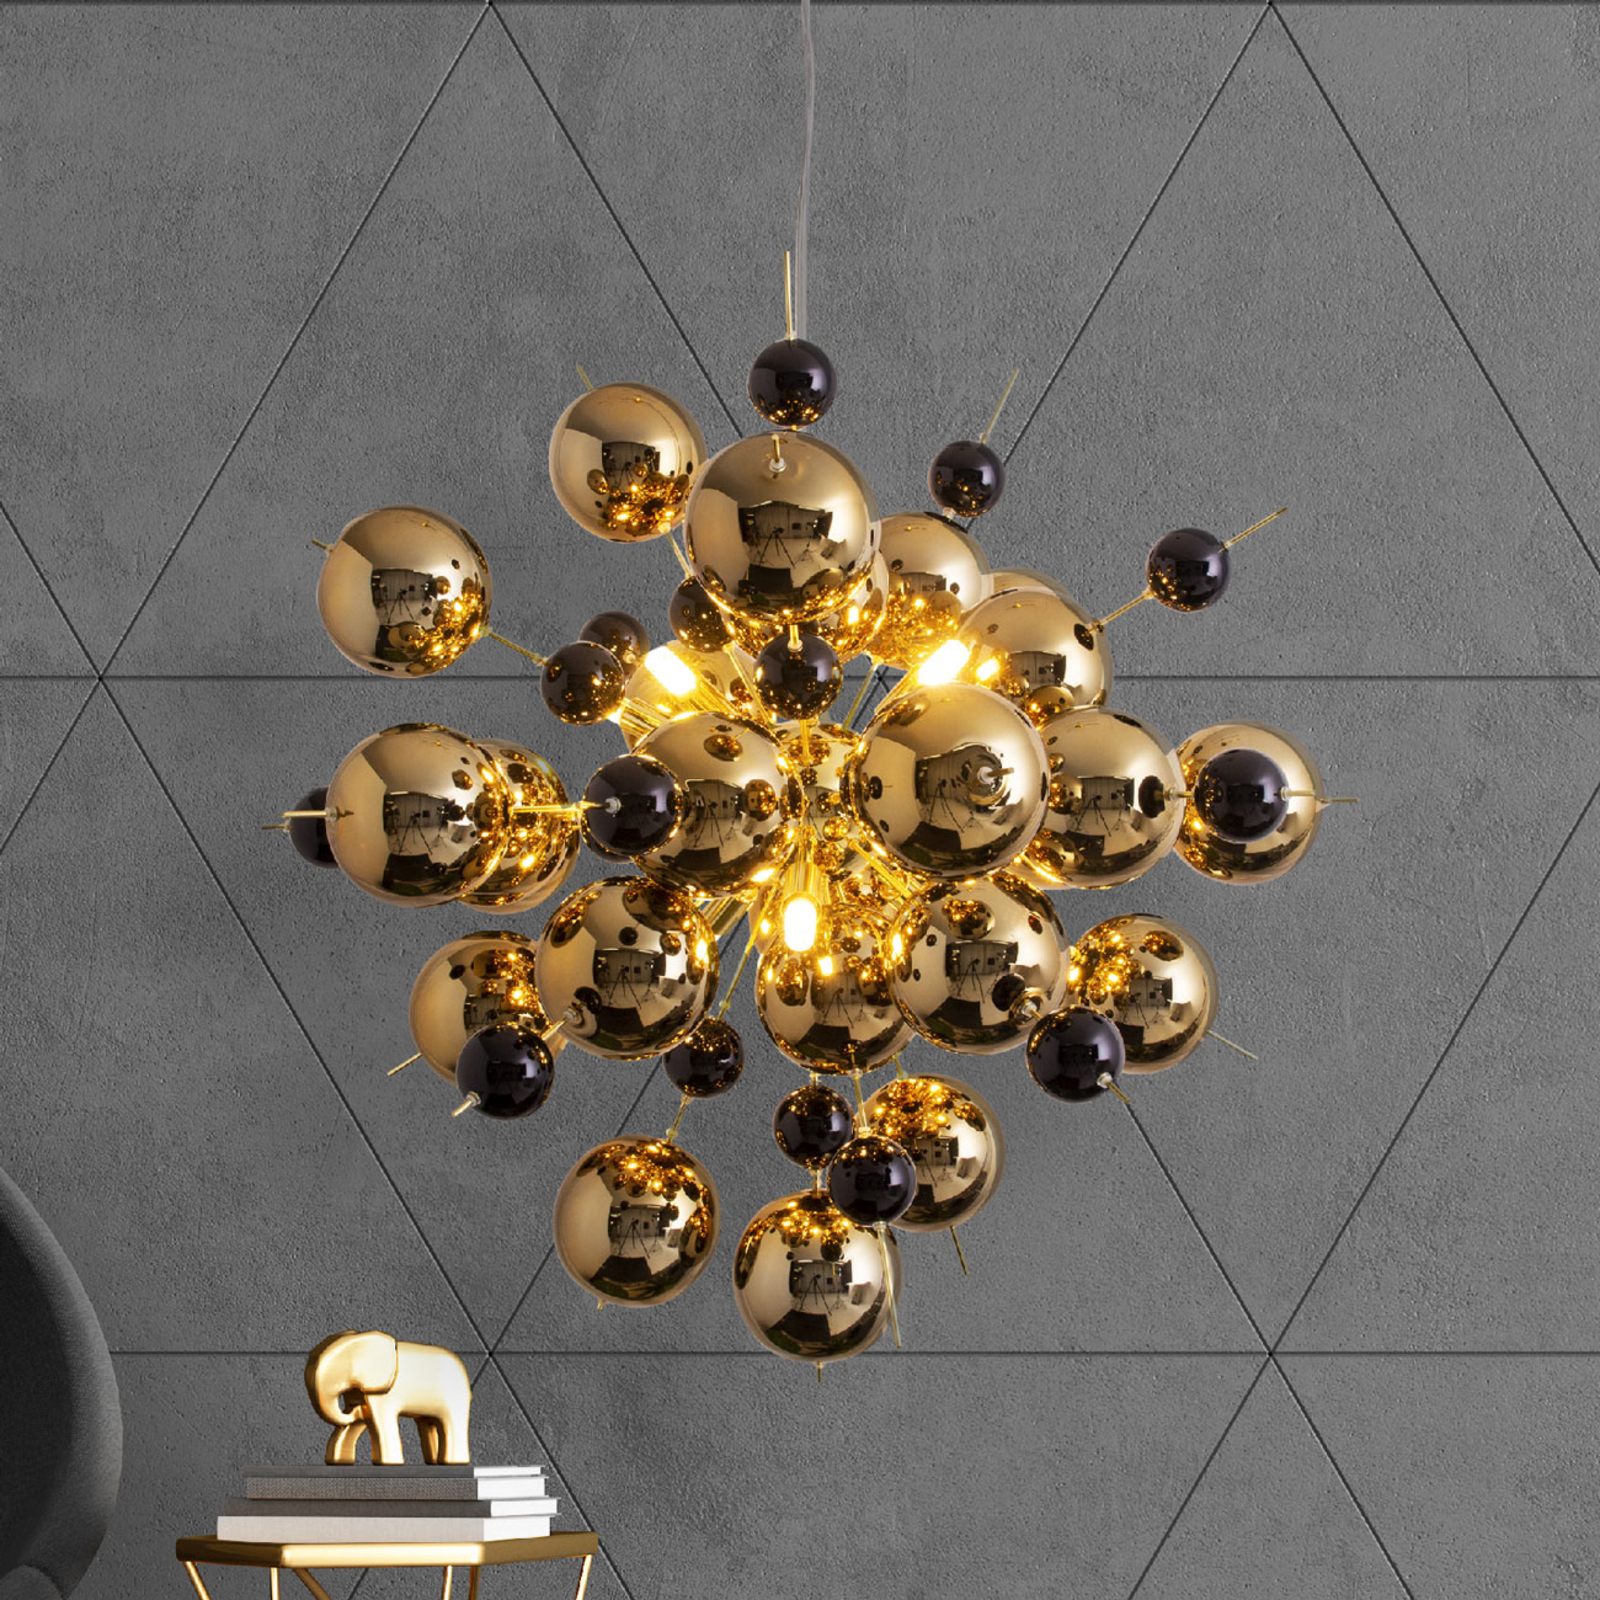 Hanglamp explosie met gouden bollen